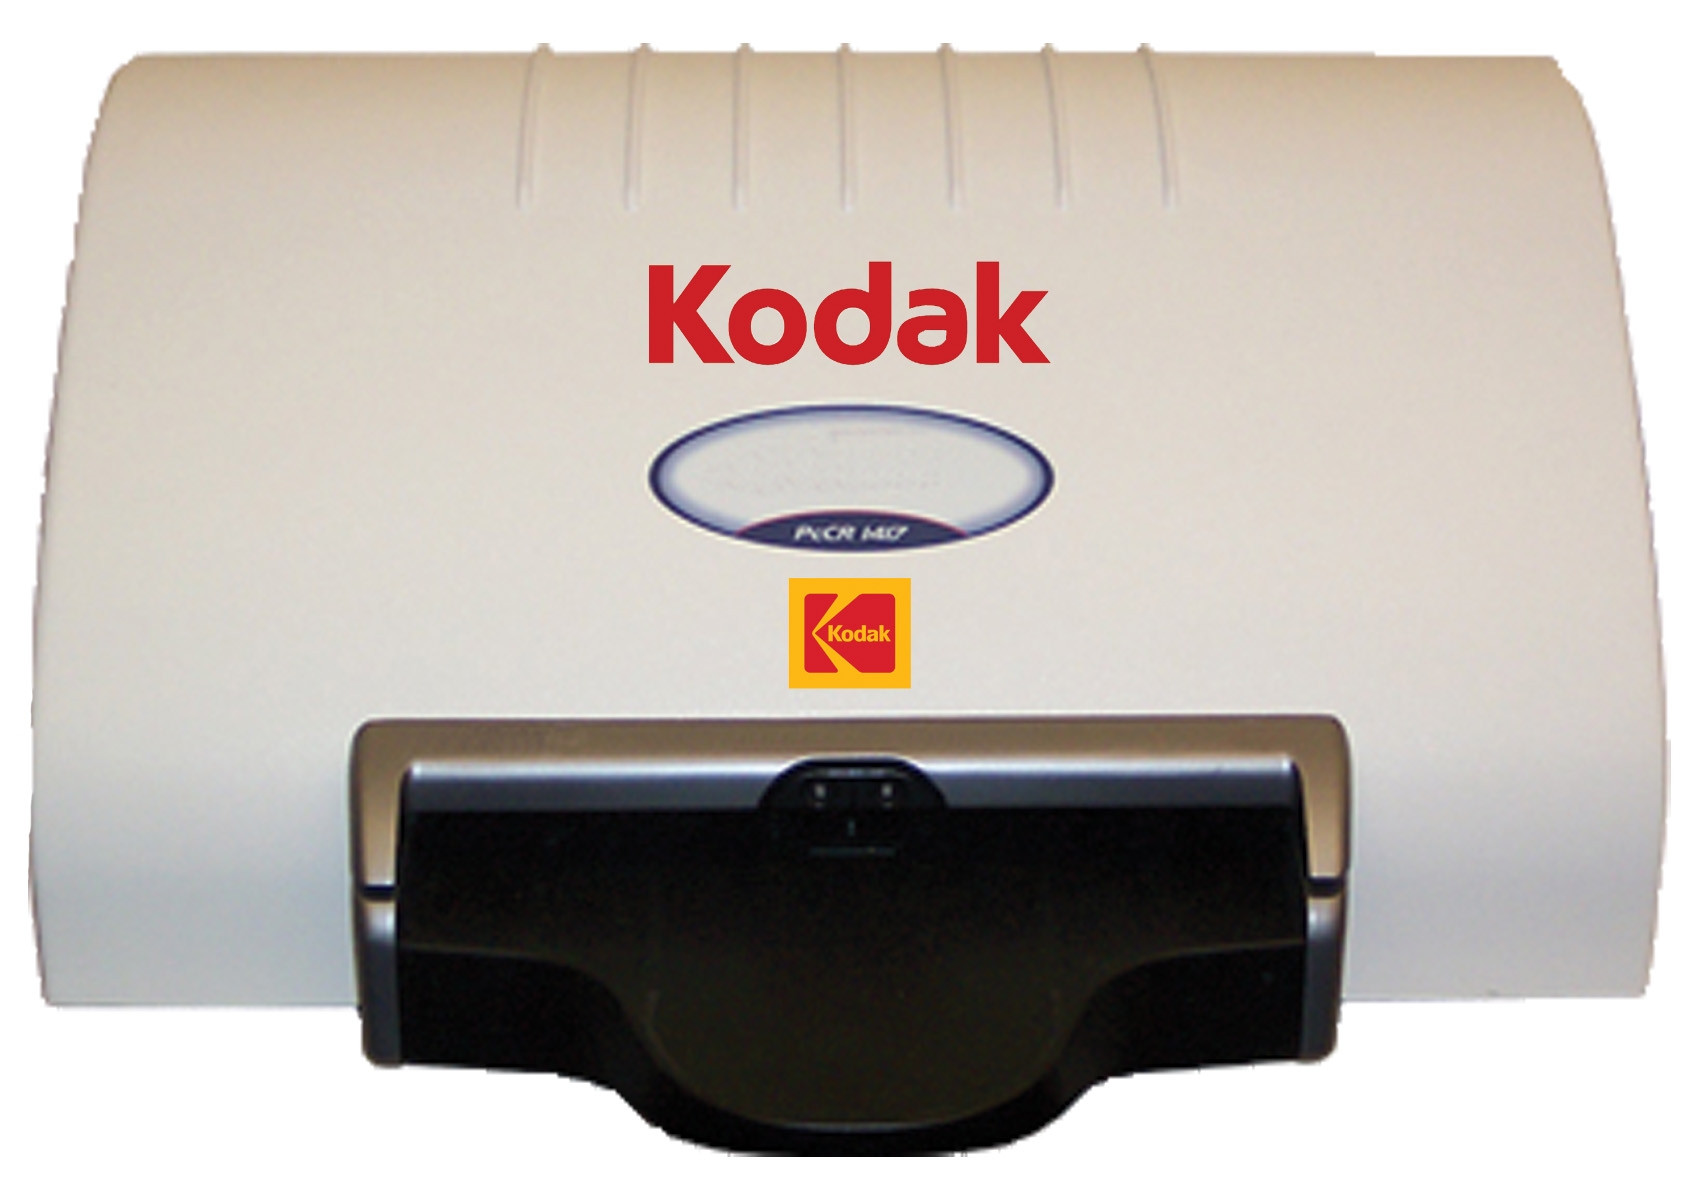 Kodak PoC 120 used